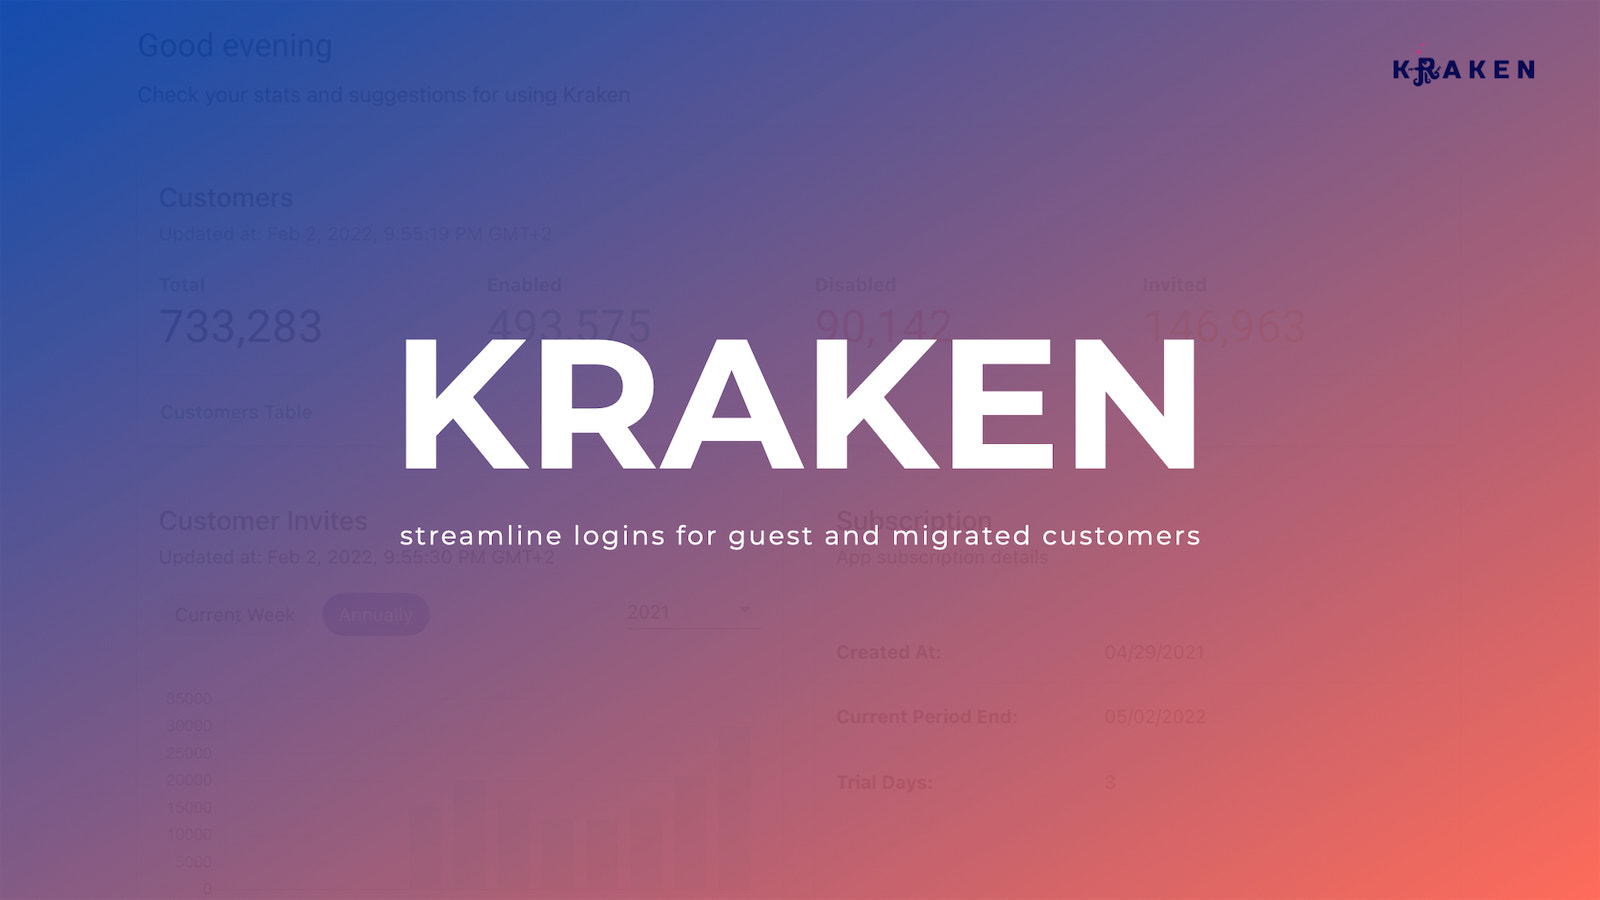 Simplifiez les connexions pour les clients invités et migrés - Application Kraken